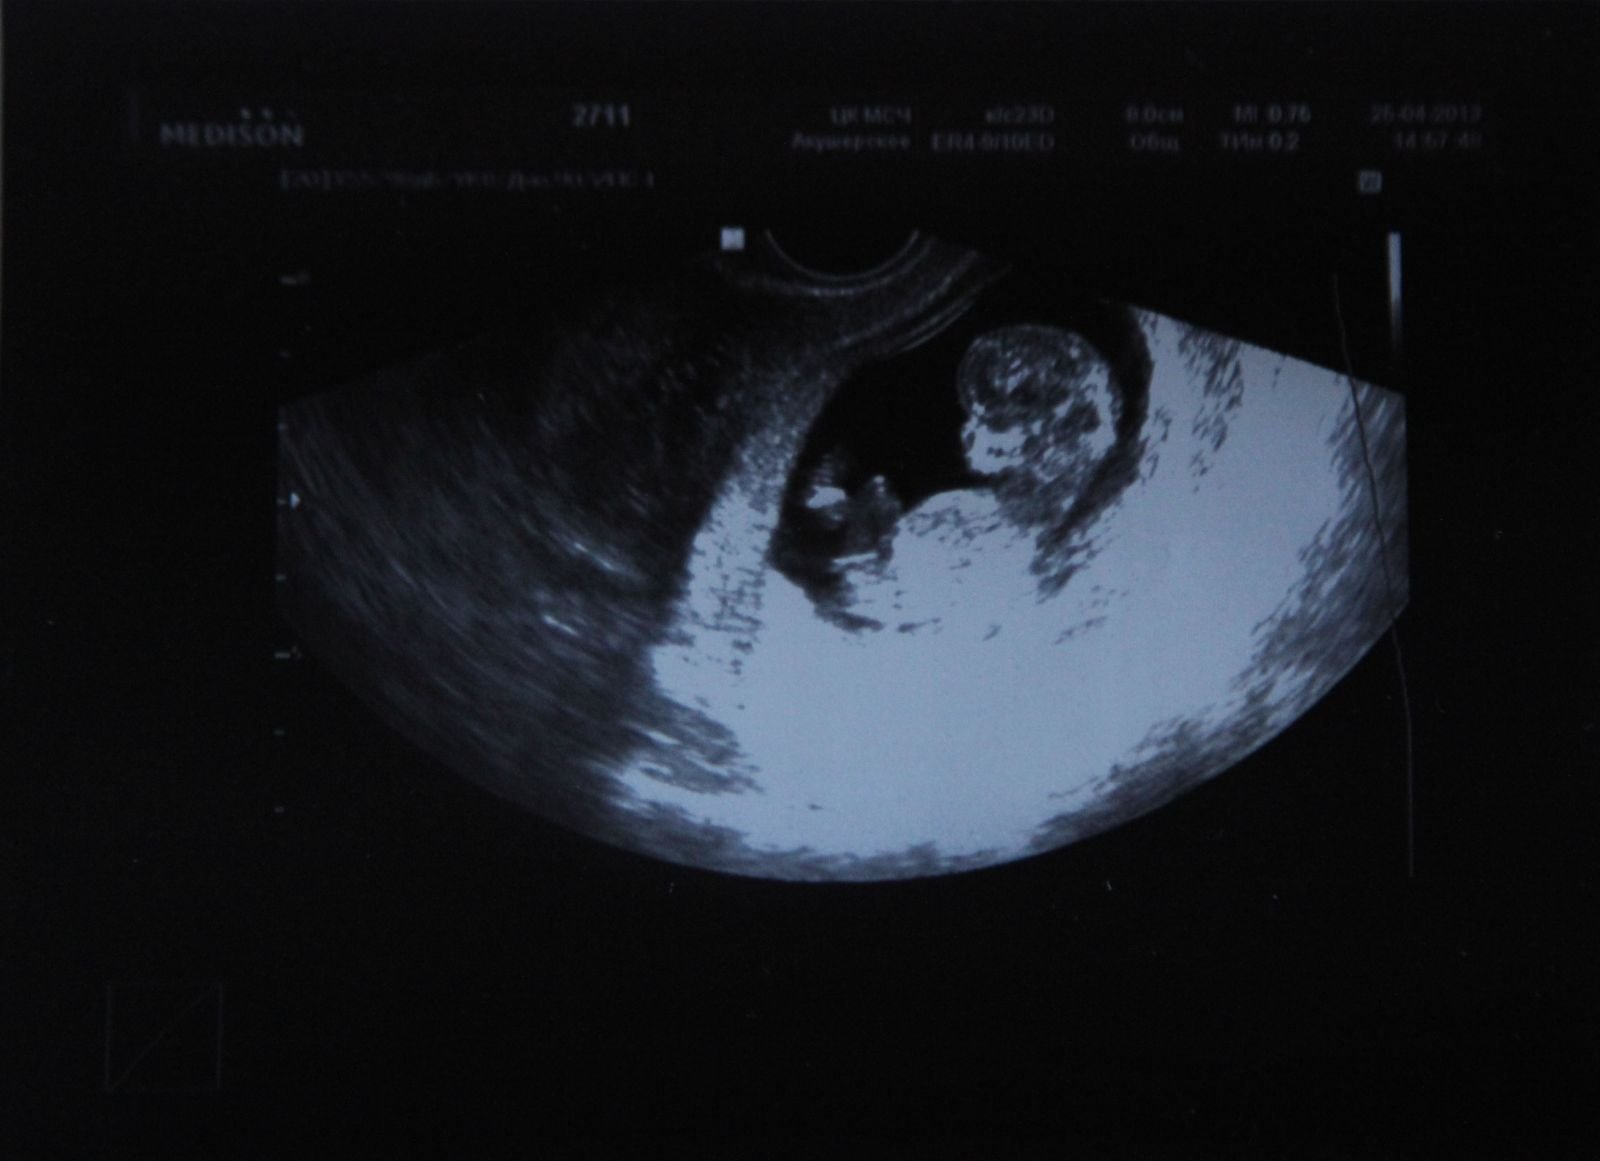 На 11 неделе тянет. УЗИ 10-11 недель беременности. УЗИ 11 недель беременности. 11 И 5 недель беременности УЗИ. Фото УЗИ беременности 11 недель беременности.